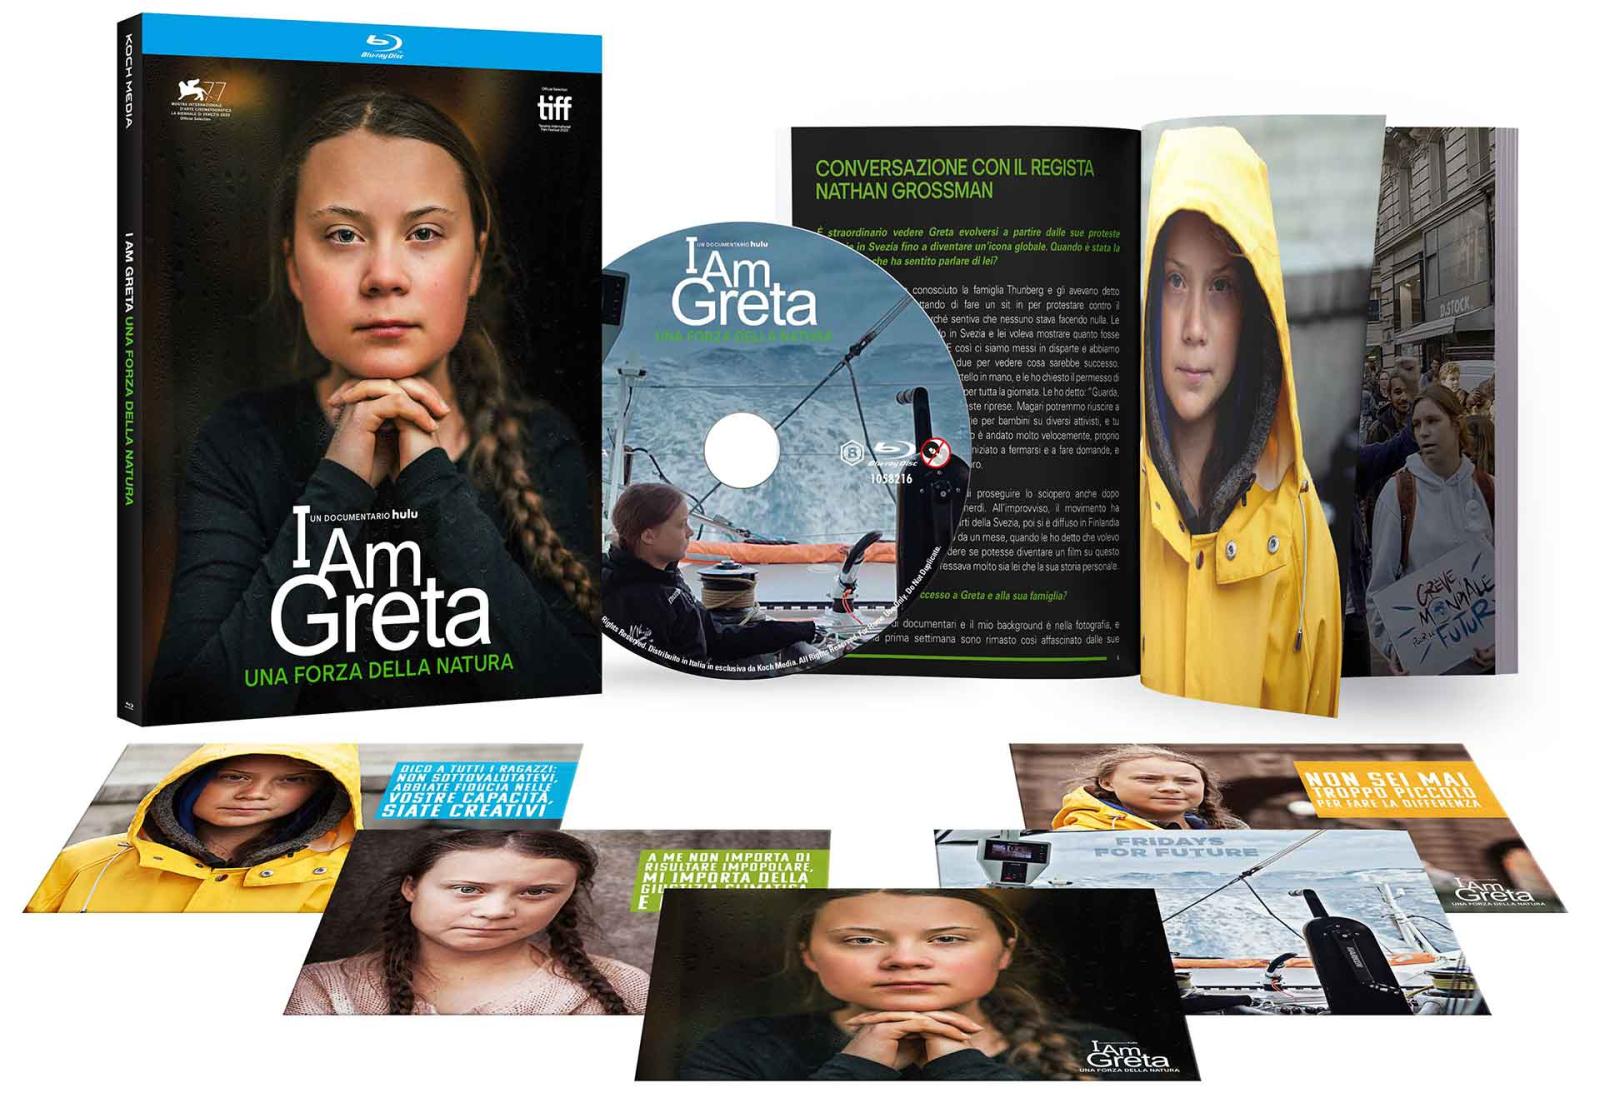 I Am Greta - Una Forza della Natura - Blu-ray + Booklet + Cards (Blu-ray) Image 5